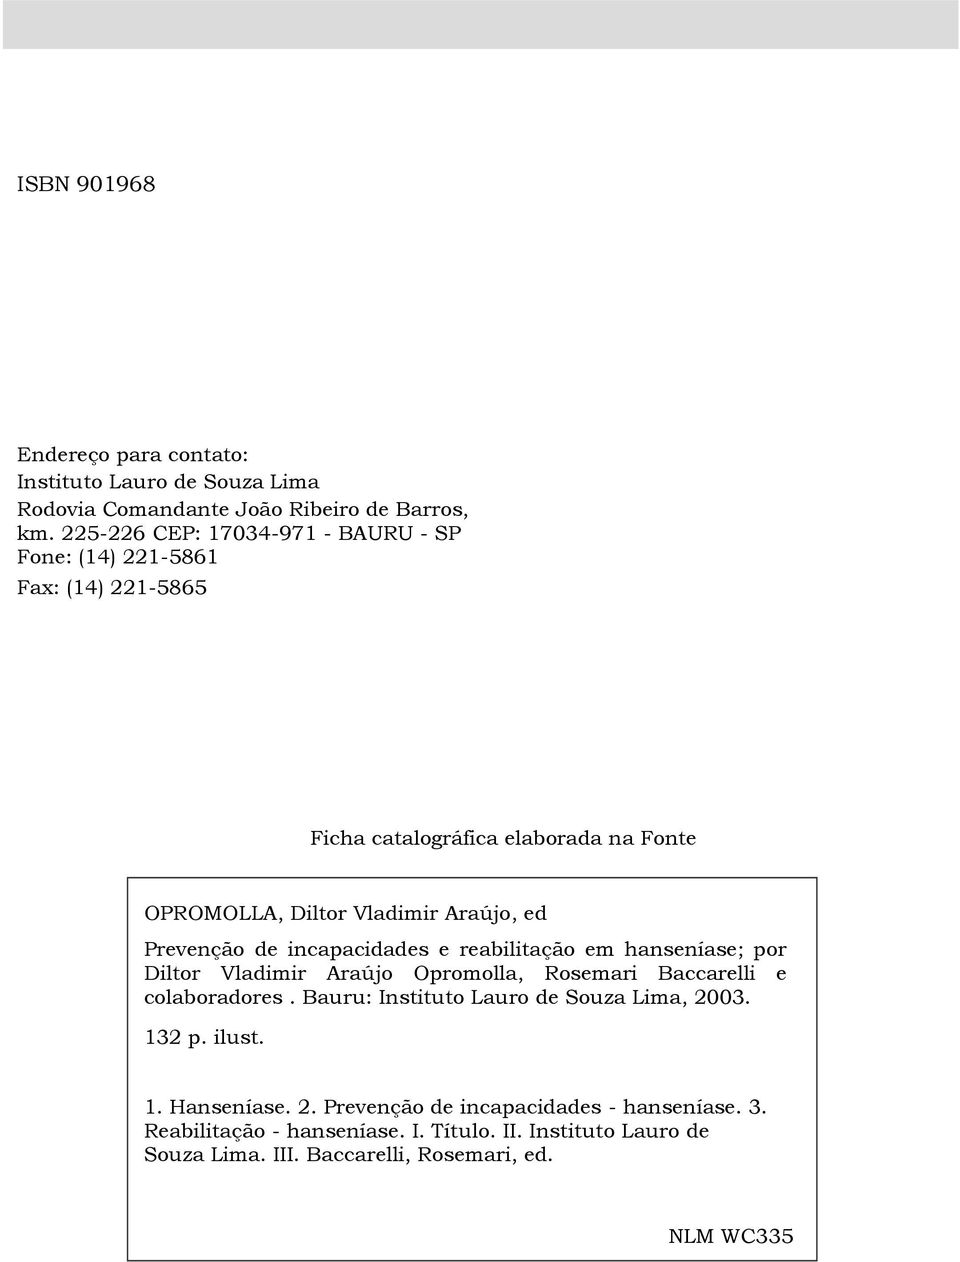 Araújo, ed Prevenção de incapacidades e reabilitação em hanseníase; por, e colaboradores. Bauru: Instituto Lauro de Souza Lima, 2003. 132 p.